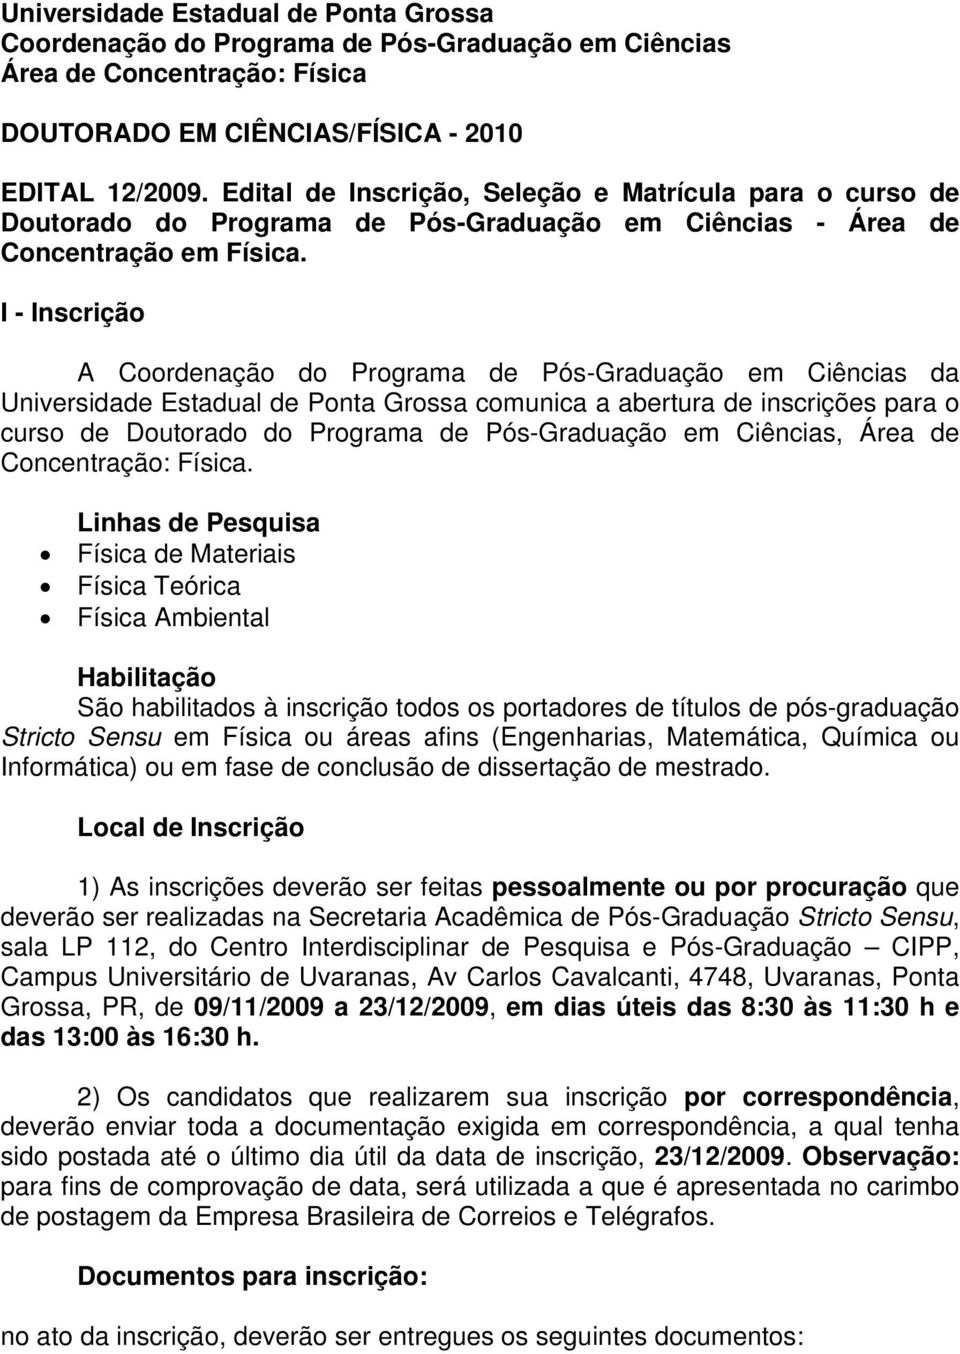 I - Inscrição A Coordenação do Programa de Pós-Graduação em Ciências da Universidade Estadual de Ponta Grossa comunica a abertura de inscrições para o curso de Doutorado do Programa de Pós-Graduação